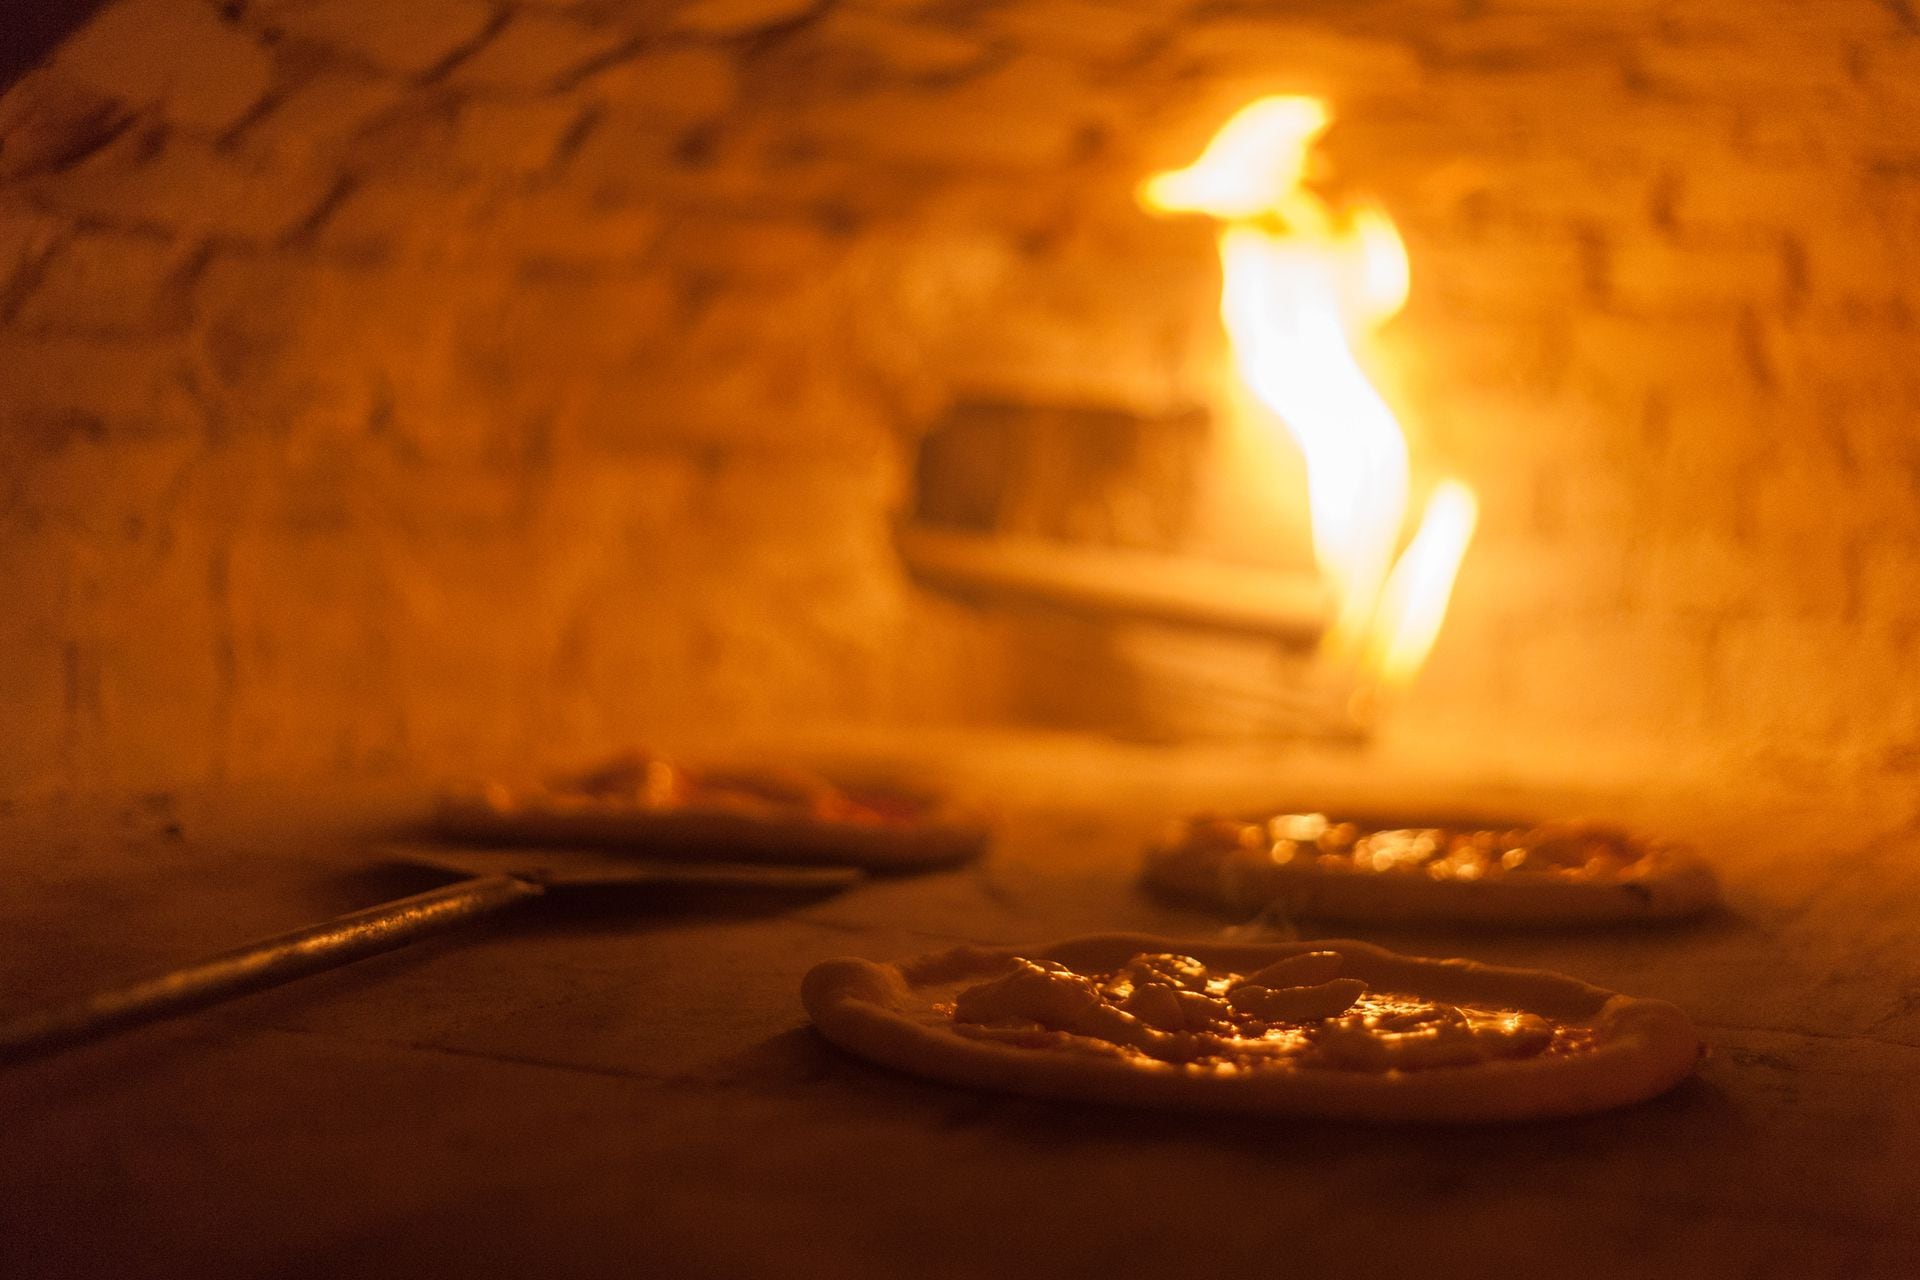 La pizza napoletana que proponen Larocca y Jovenich es finita, de bordes altos y aireados, y con ingredientes tanto italianos como autóctonos.